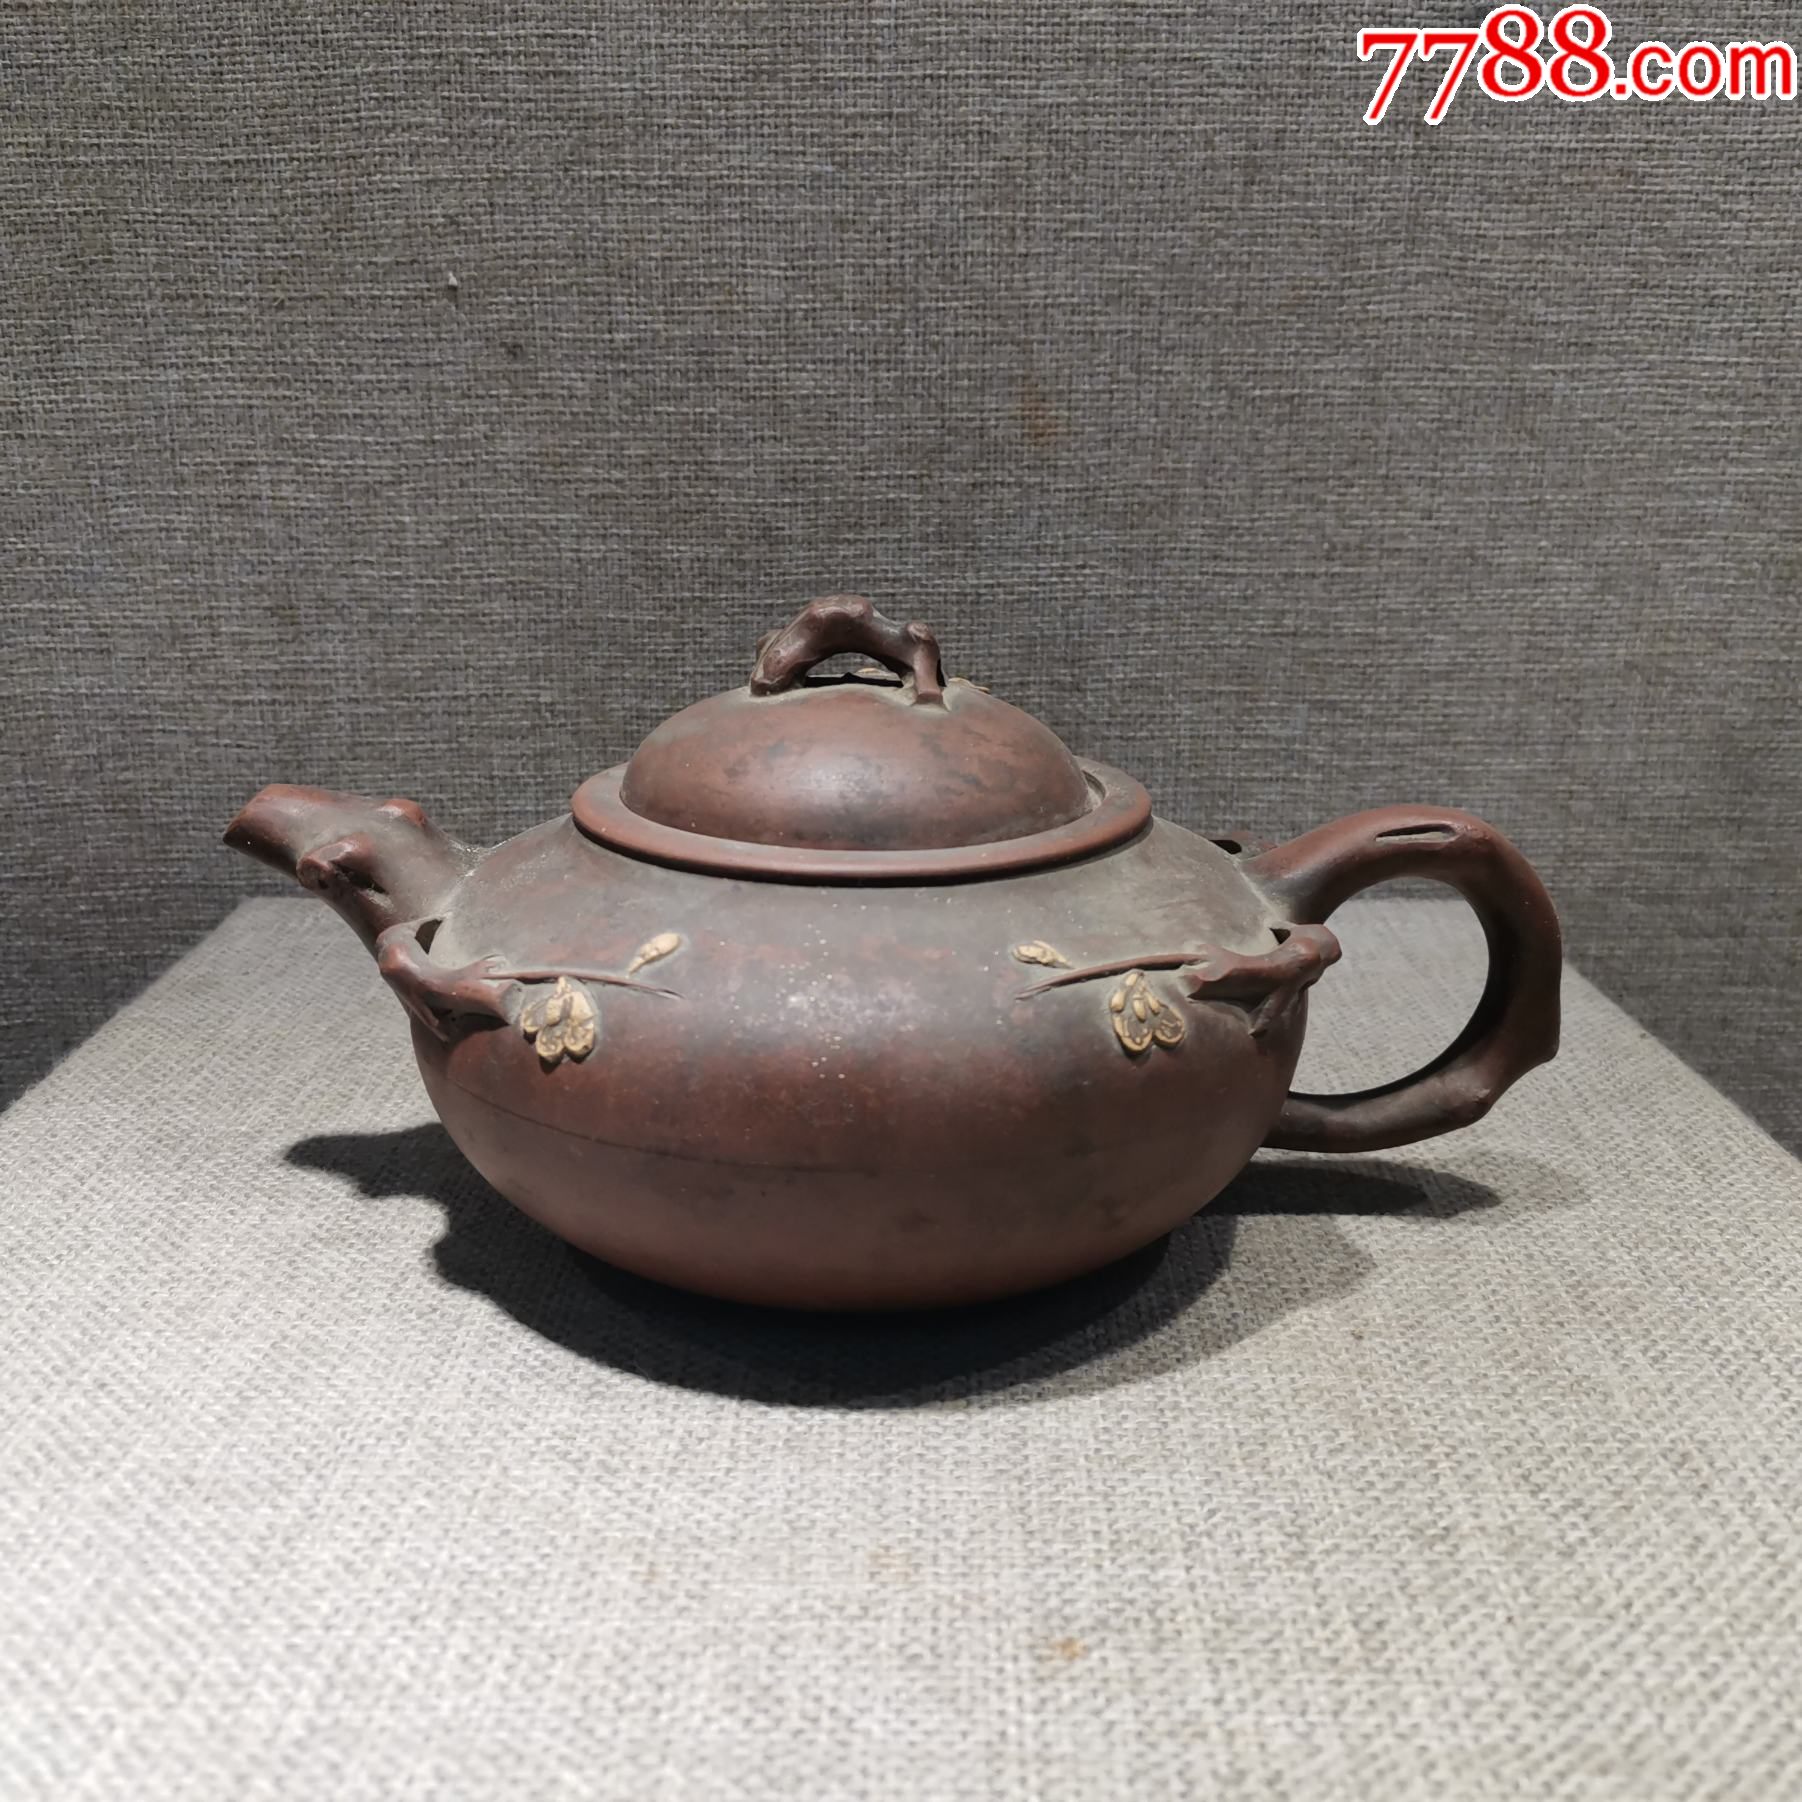 老茶壶收藏民国时期民俗用品紫砂壶梅花原品保真怀旧陈设经典